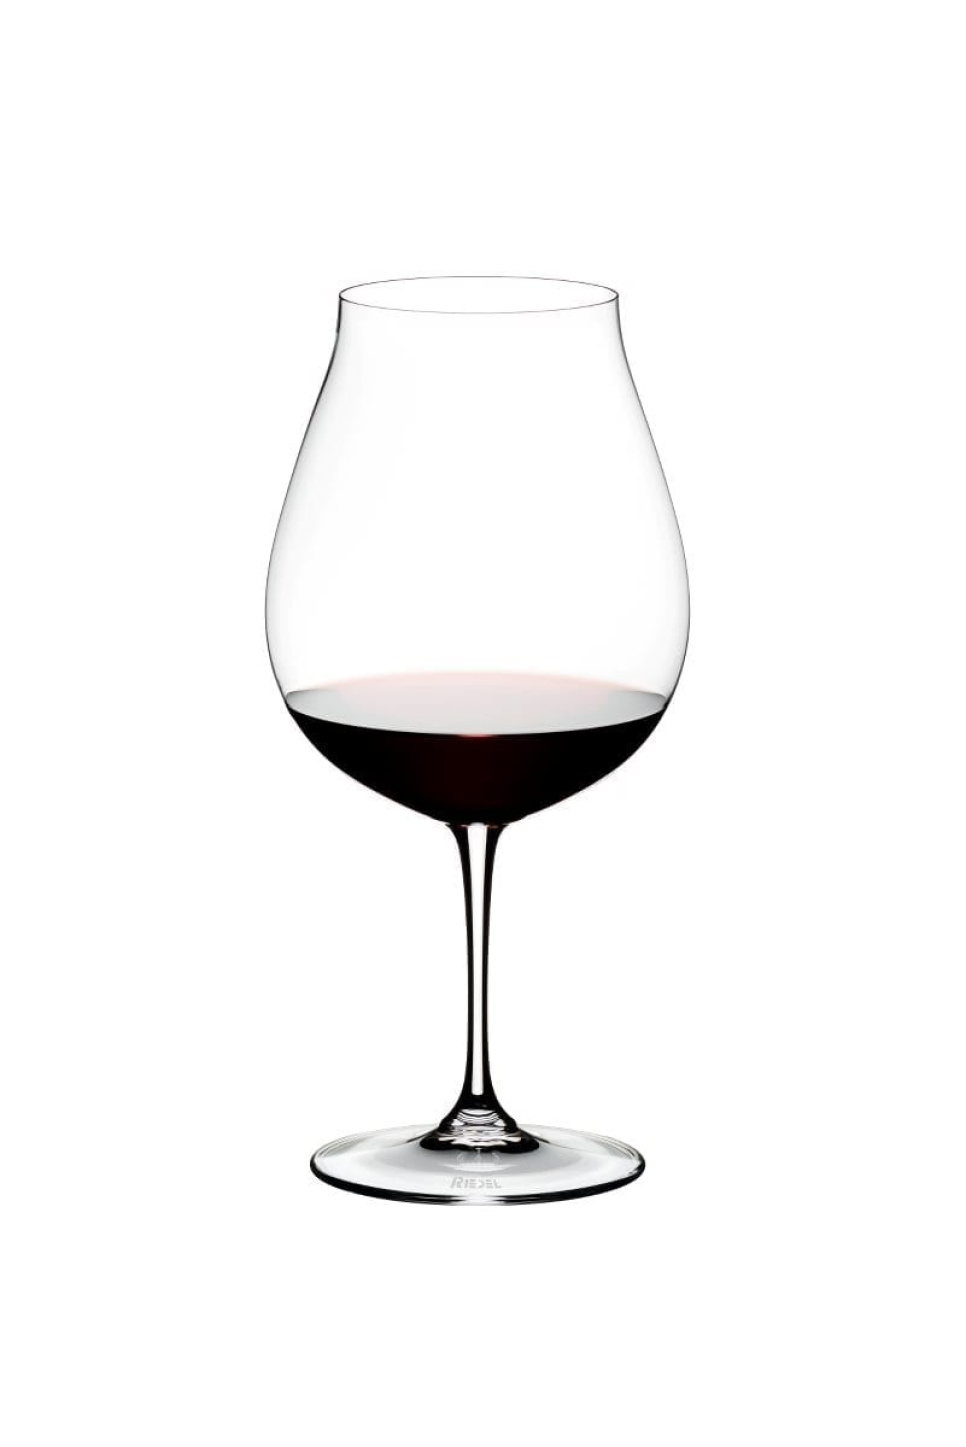 Verre à vin rouge New World Pinot Noir 80cl, Vinum - Riedel dans le groupe Cocktails et Vin / Verre à vin / Verre à vin rouge l\'adresse The Kitchen Lab (1073-20050)